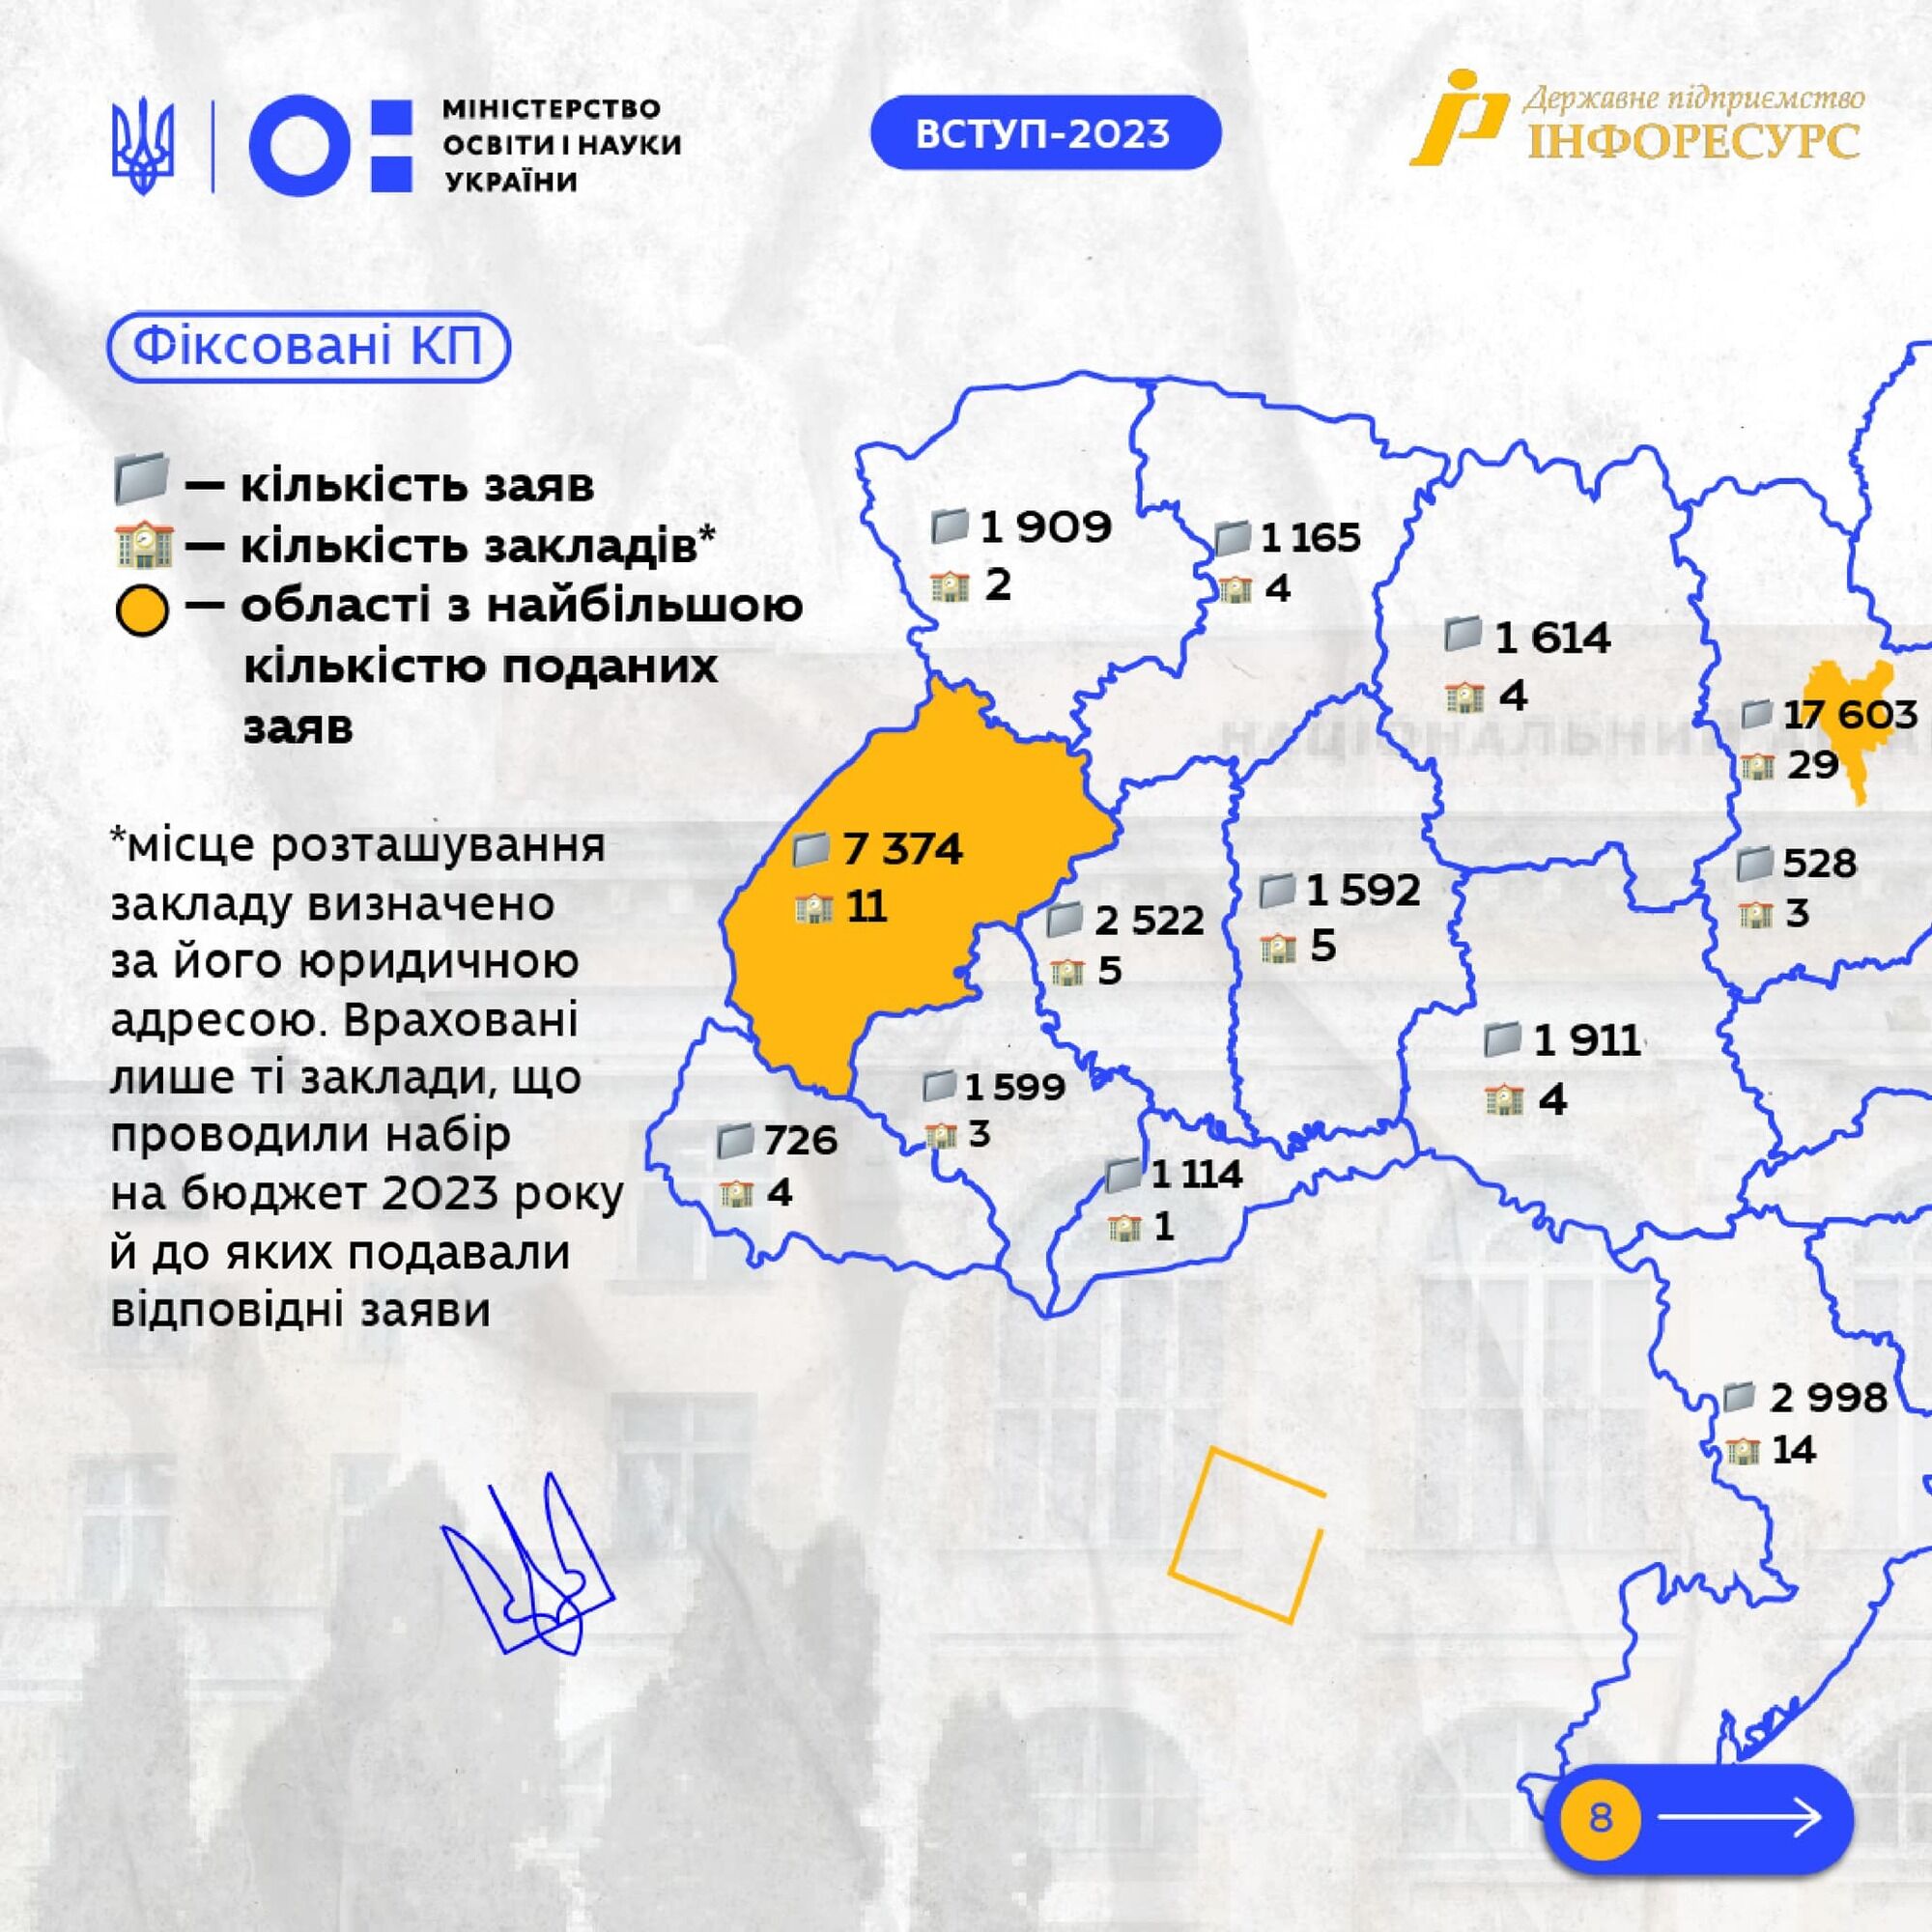 Куда поступали на магистратуру студенты в 2023 году. Рейтинг лучших учебных заведений Украины